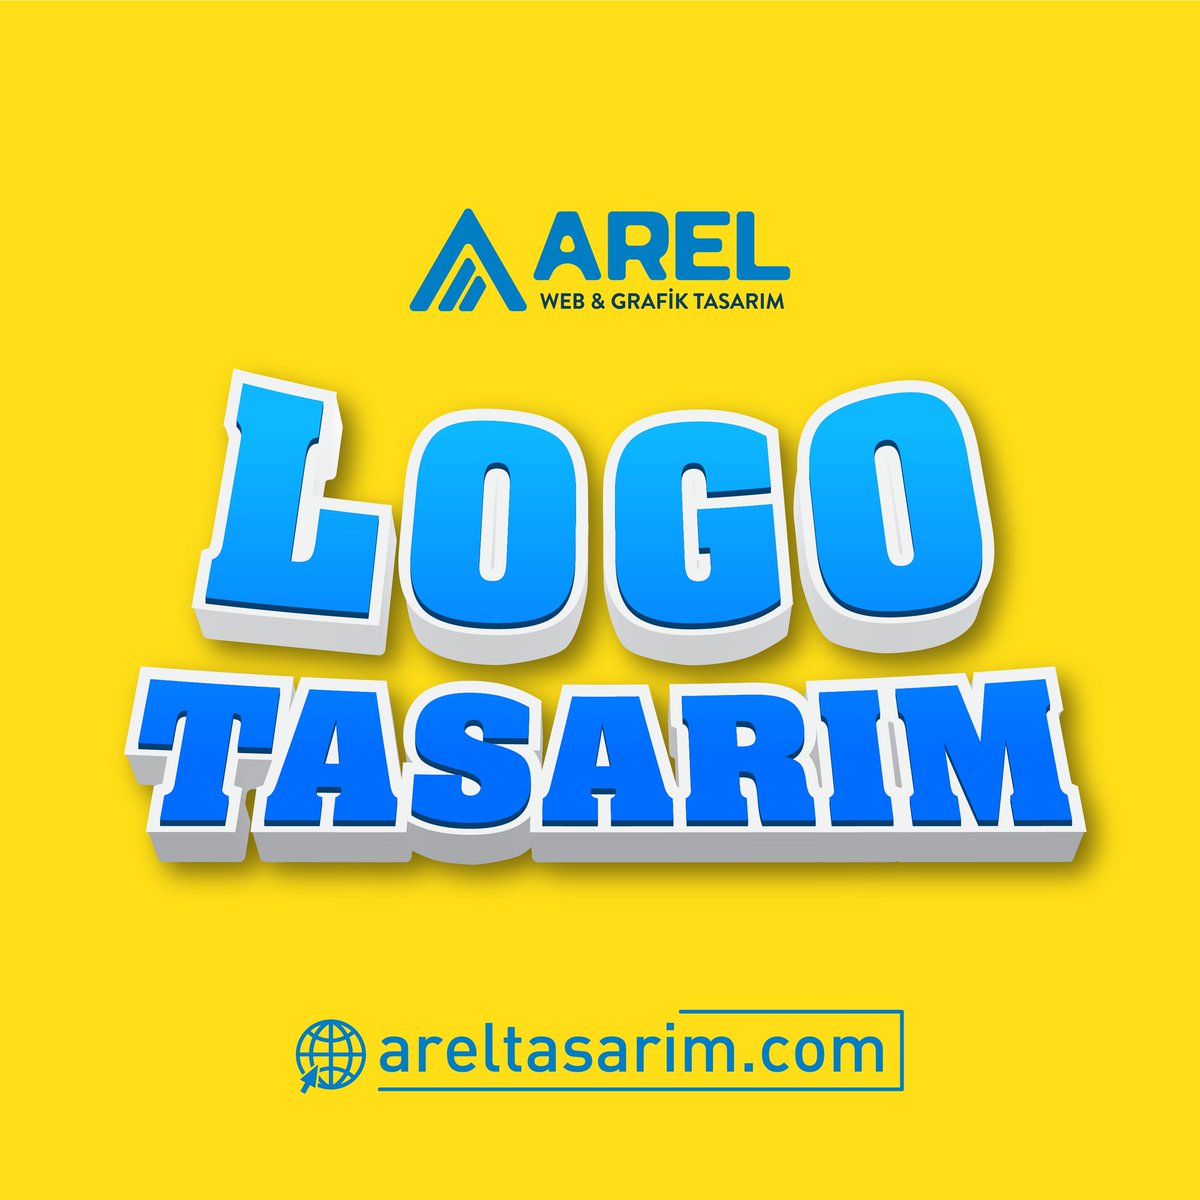 Logo Tasarım Markalaşma Yönünde İşletmeniz İçin 
En Önemli Adımlardan Biridir. Markanız İçin Logo Tasarlıyoruz.
#logotasarım #logo #tasarım #grafiktasarım #grafiker #areltasarım #grafiktasarımcı #twitter #twitterxlogo #sosyalmedya